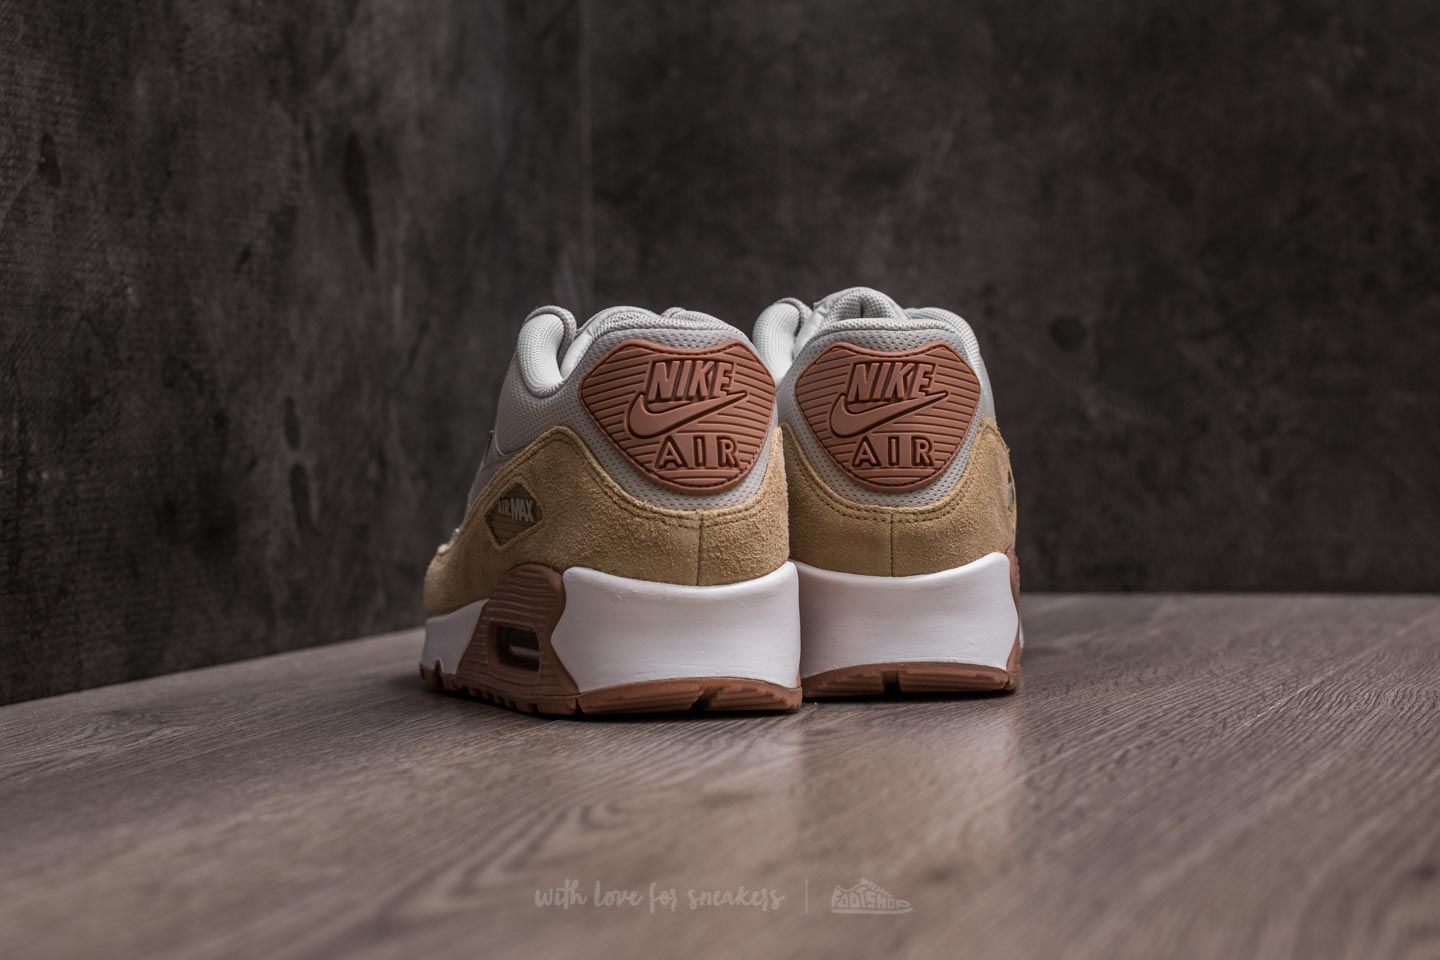 Women's shoes Nike WMNS Air Max 90 Light Bone/ Mushroom | Footshop